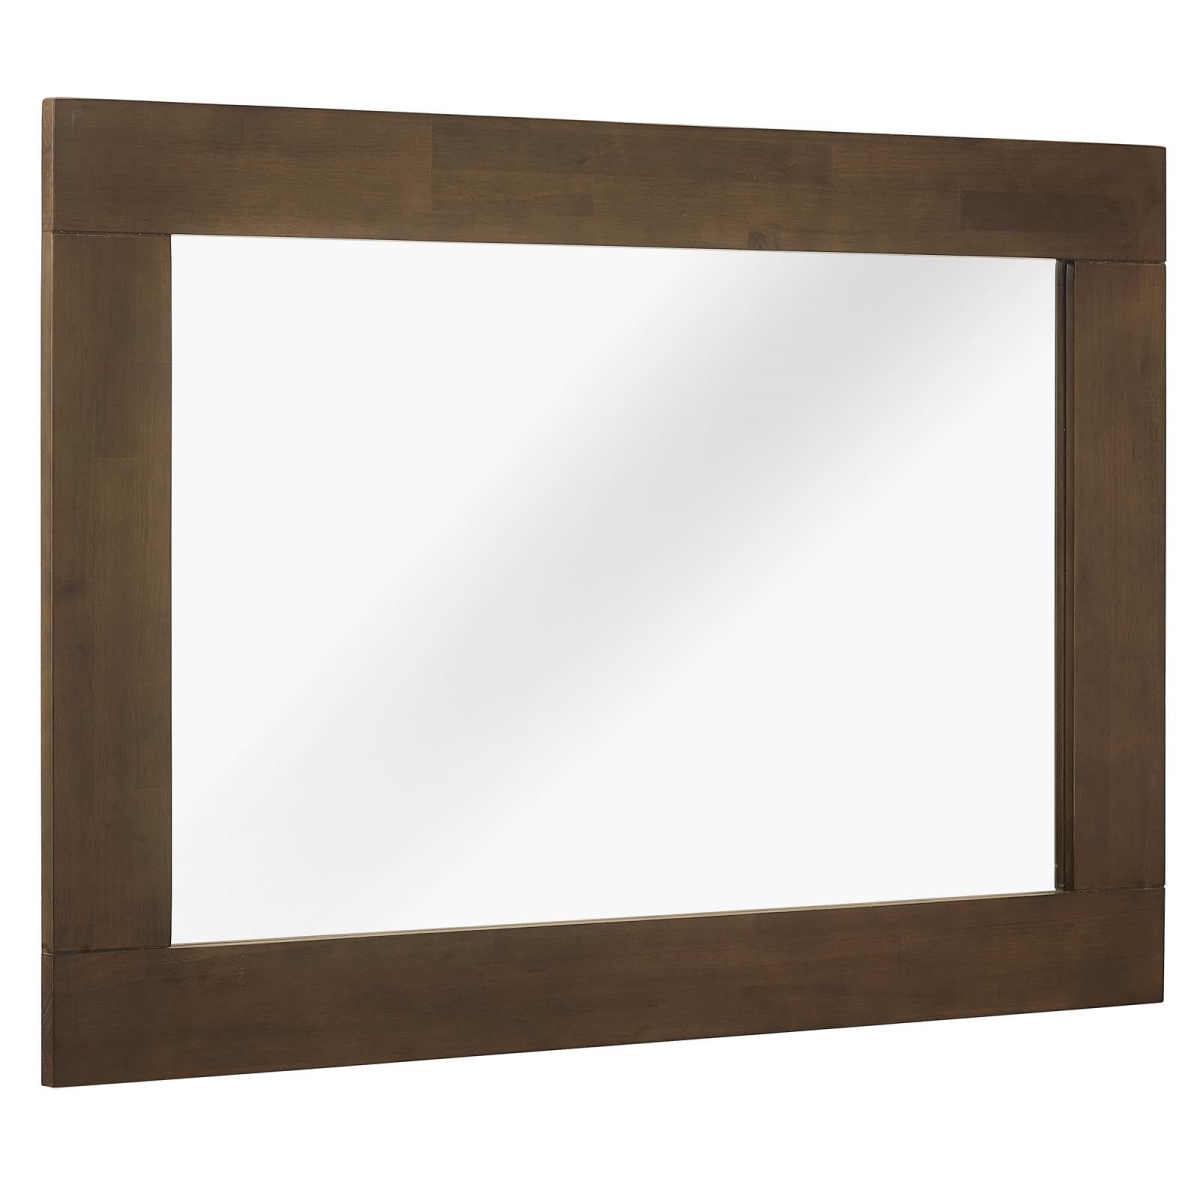 Mod-6071-wal Everly Wood Frame Mirror - Walnut, 0.5 X 39.5 X 27.5 In.